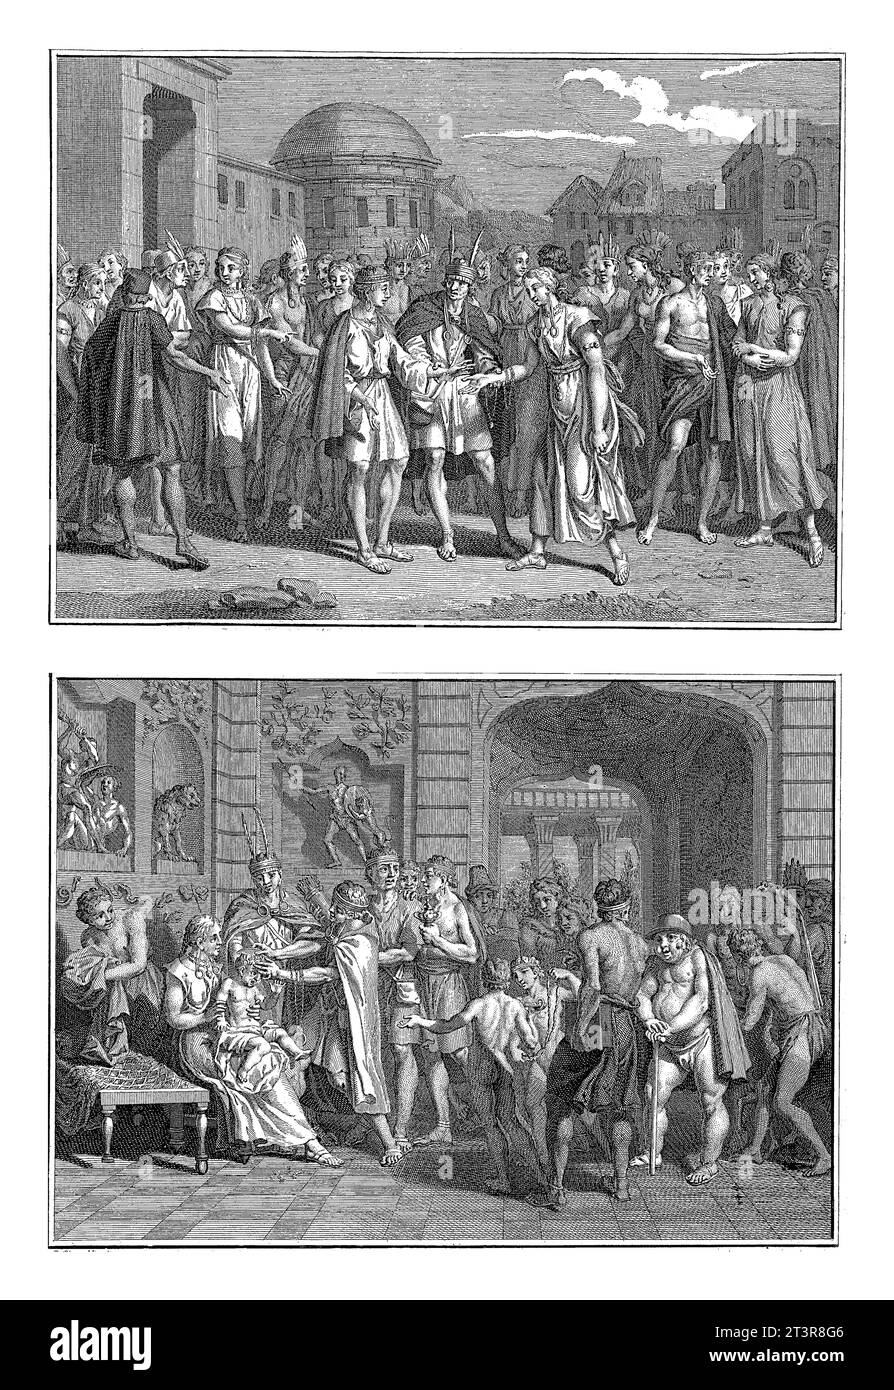 Hochzeitszeremonie und Namenszeremonie der Inkas, Bernard Picart (Werkstatt), nach Bernard Picart, 1723 Blatt mit zwei Darstellungen von Ritualen von Stockfoto